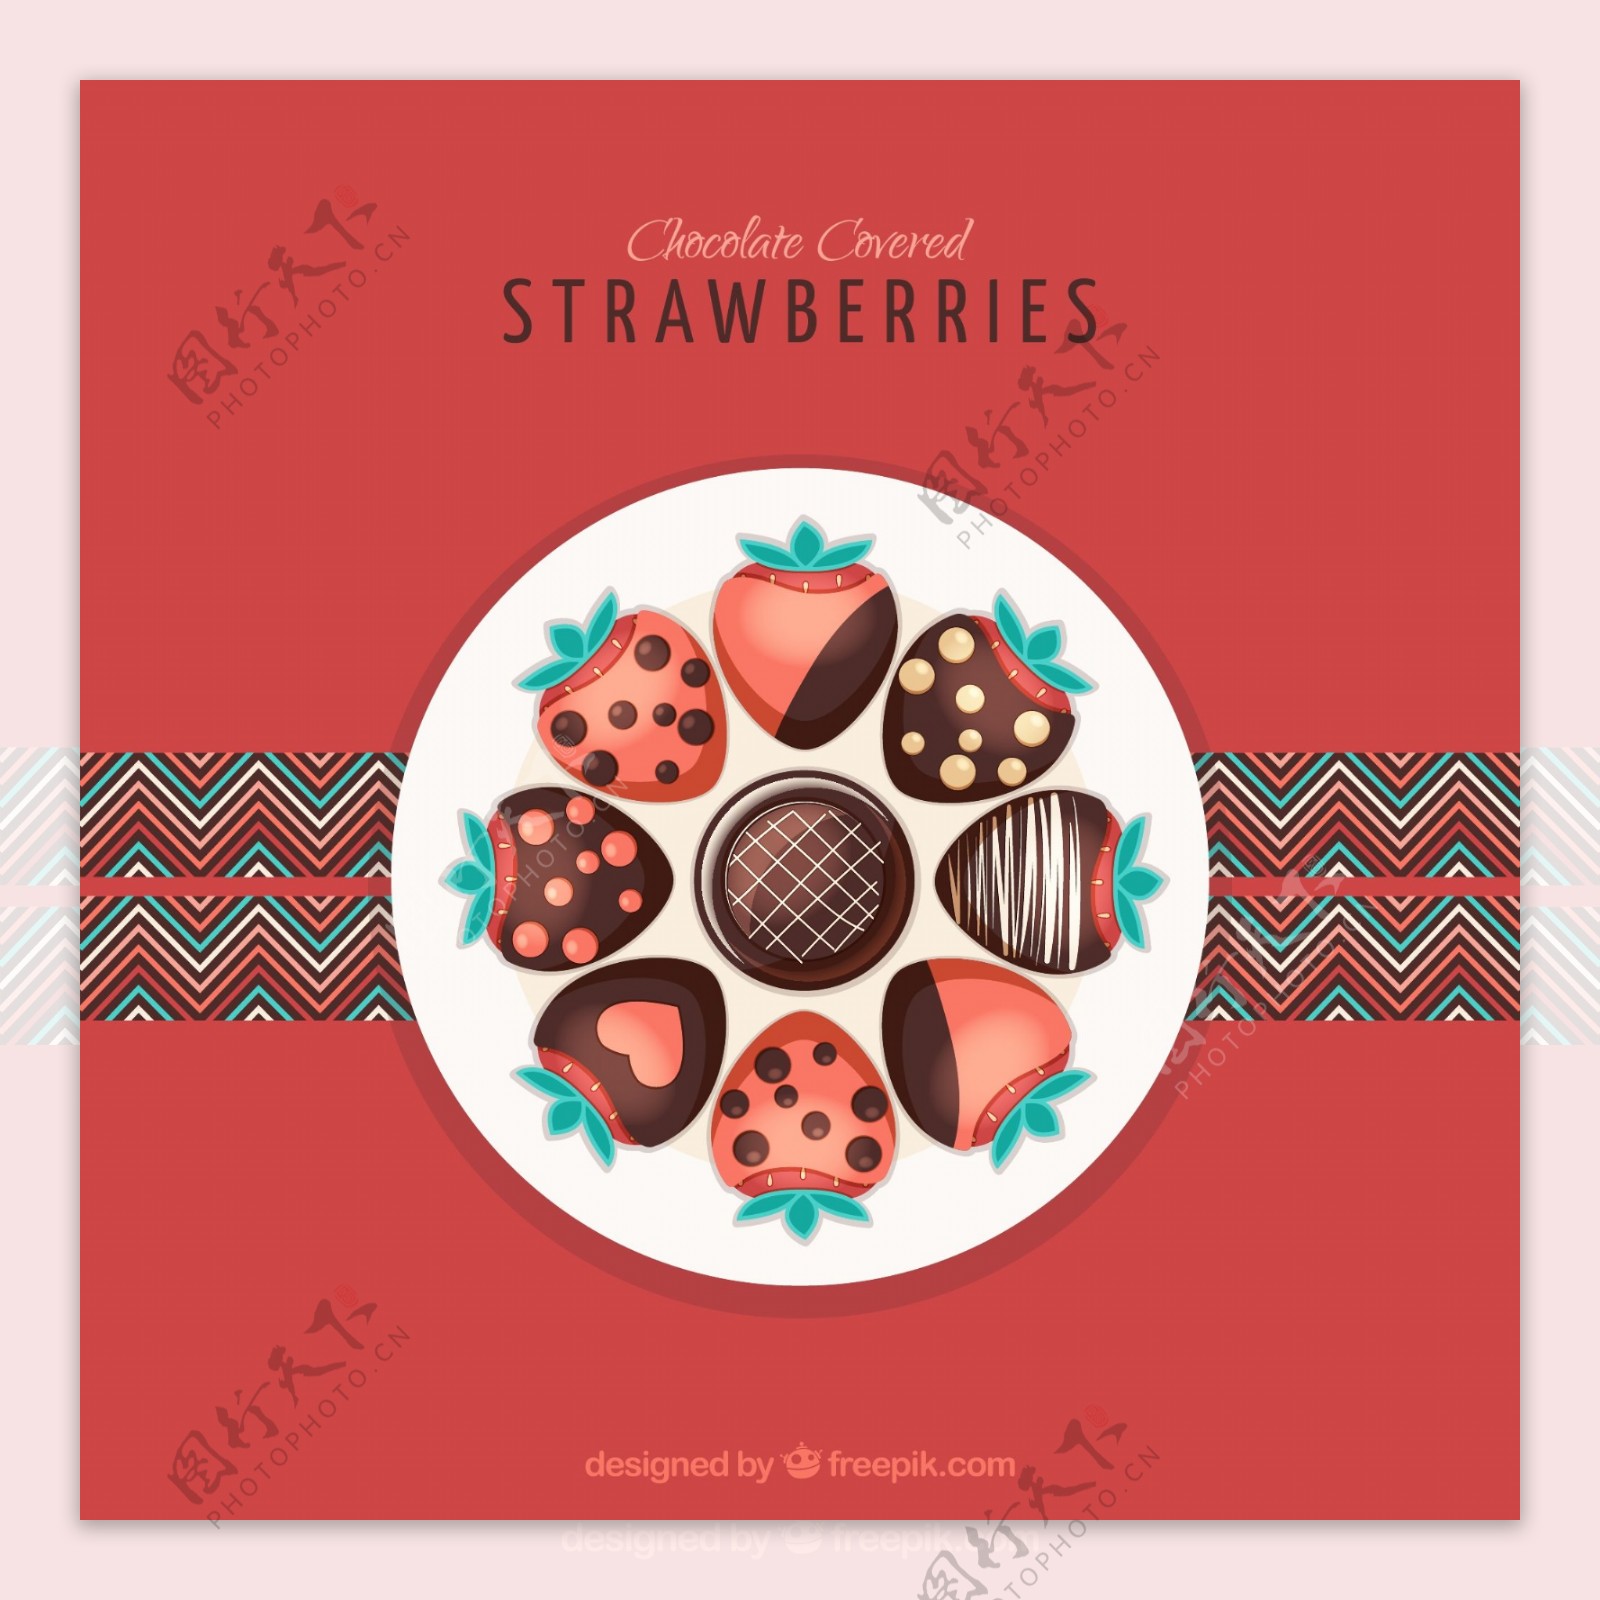 沾巧克力酱的草莓拼盘